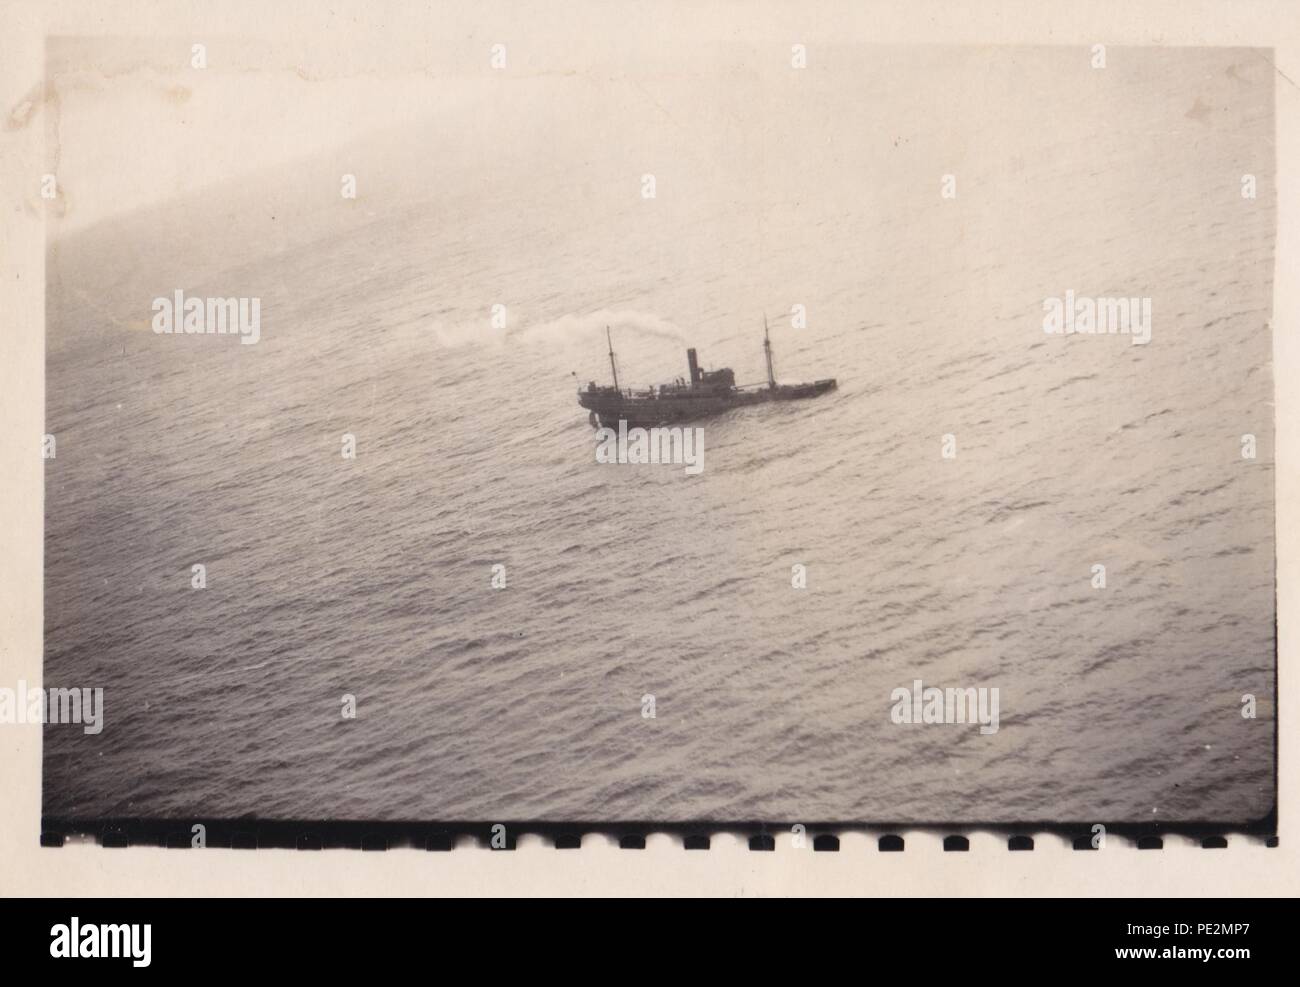 Bild aus dem Fotoalbum von Oberfeldwebel Karl gendner von 1. Staffel, Kampfgeschwader 40: Luftbild von einem Focke Wulf FW 200 Condor von KG40, zeigt ein Schiff versinkt im Atlantik. Dies ist wahrscheinlich MV Mamura, die von Leutnant Mayr und seine Crew am 19. März 1941 gesunken. Stockfoto